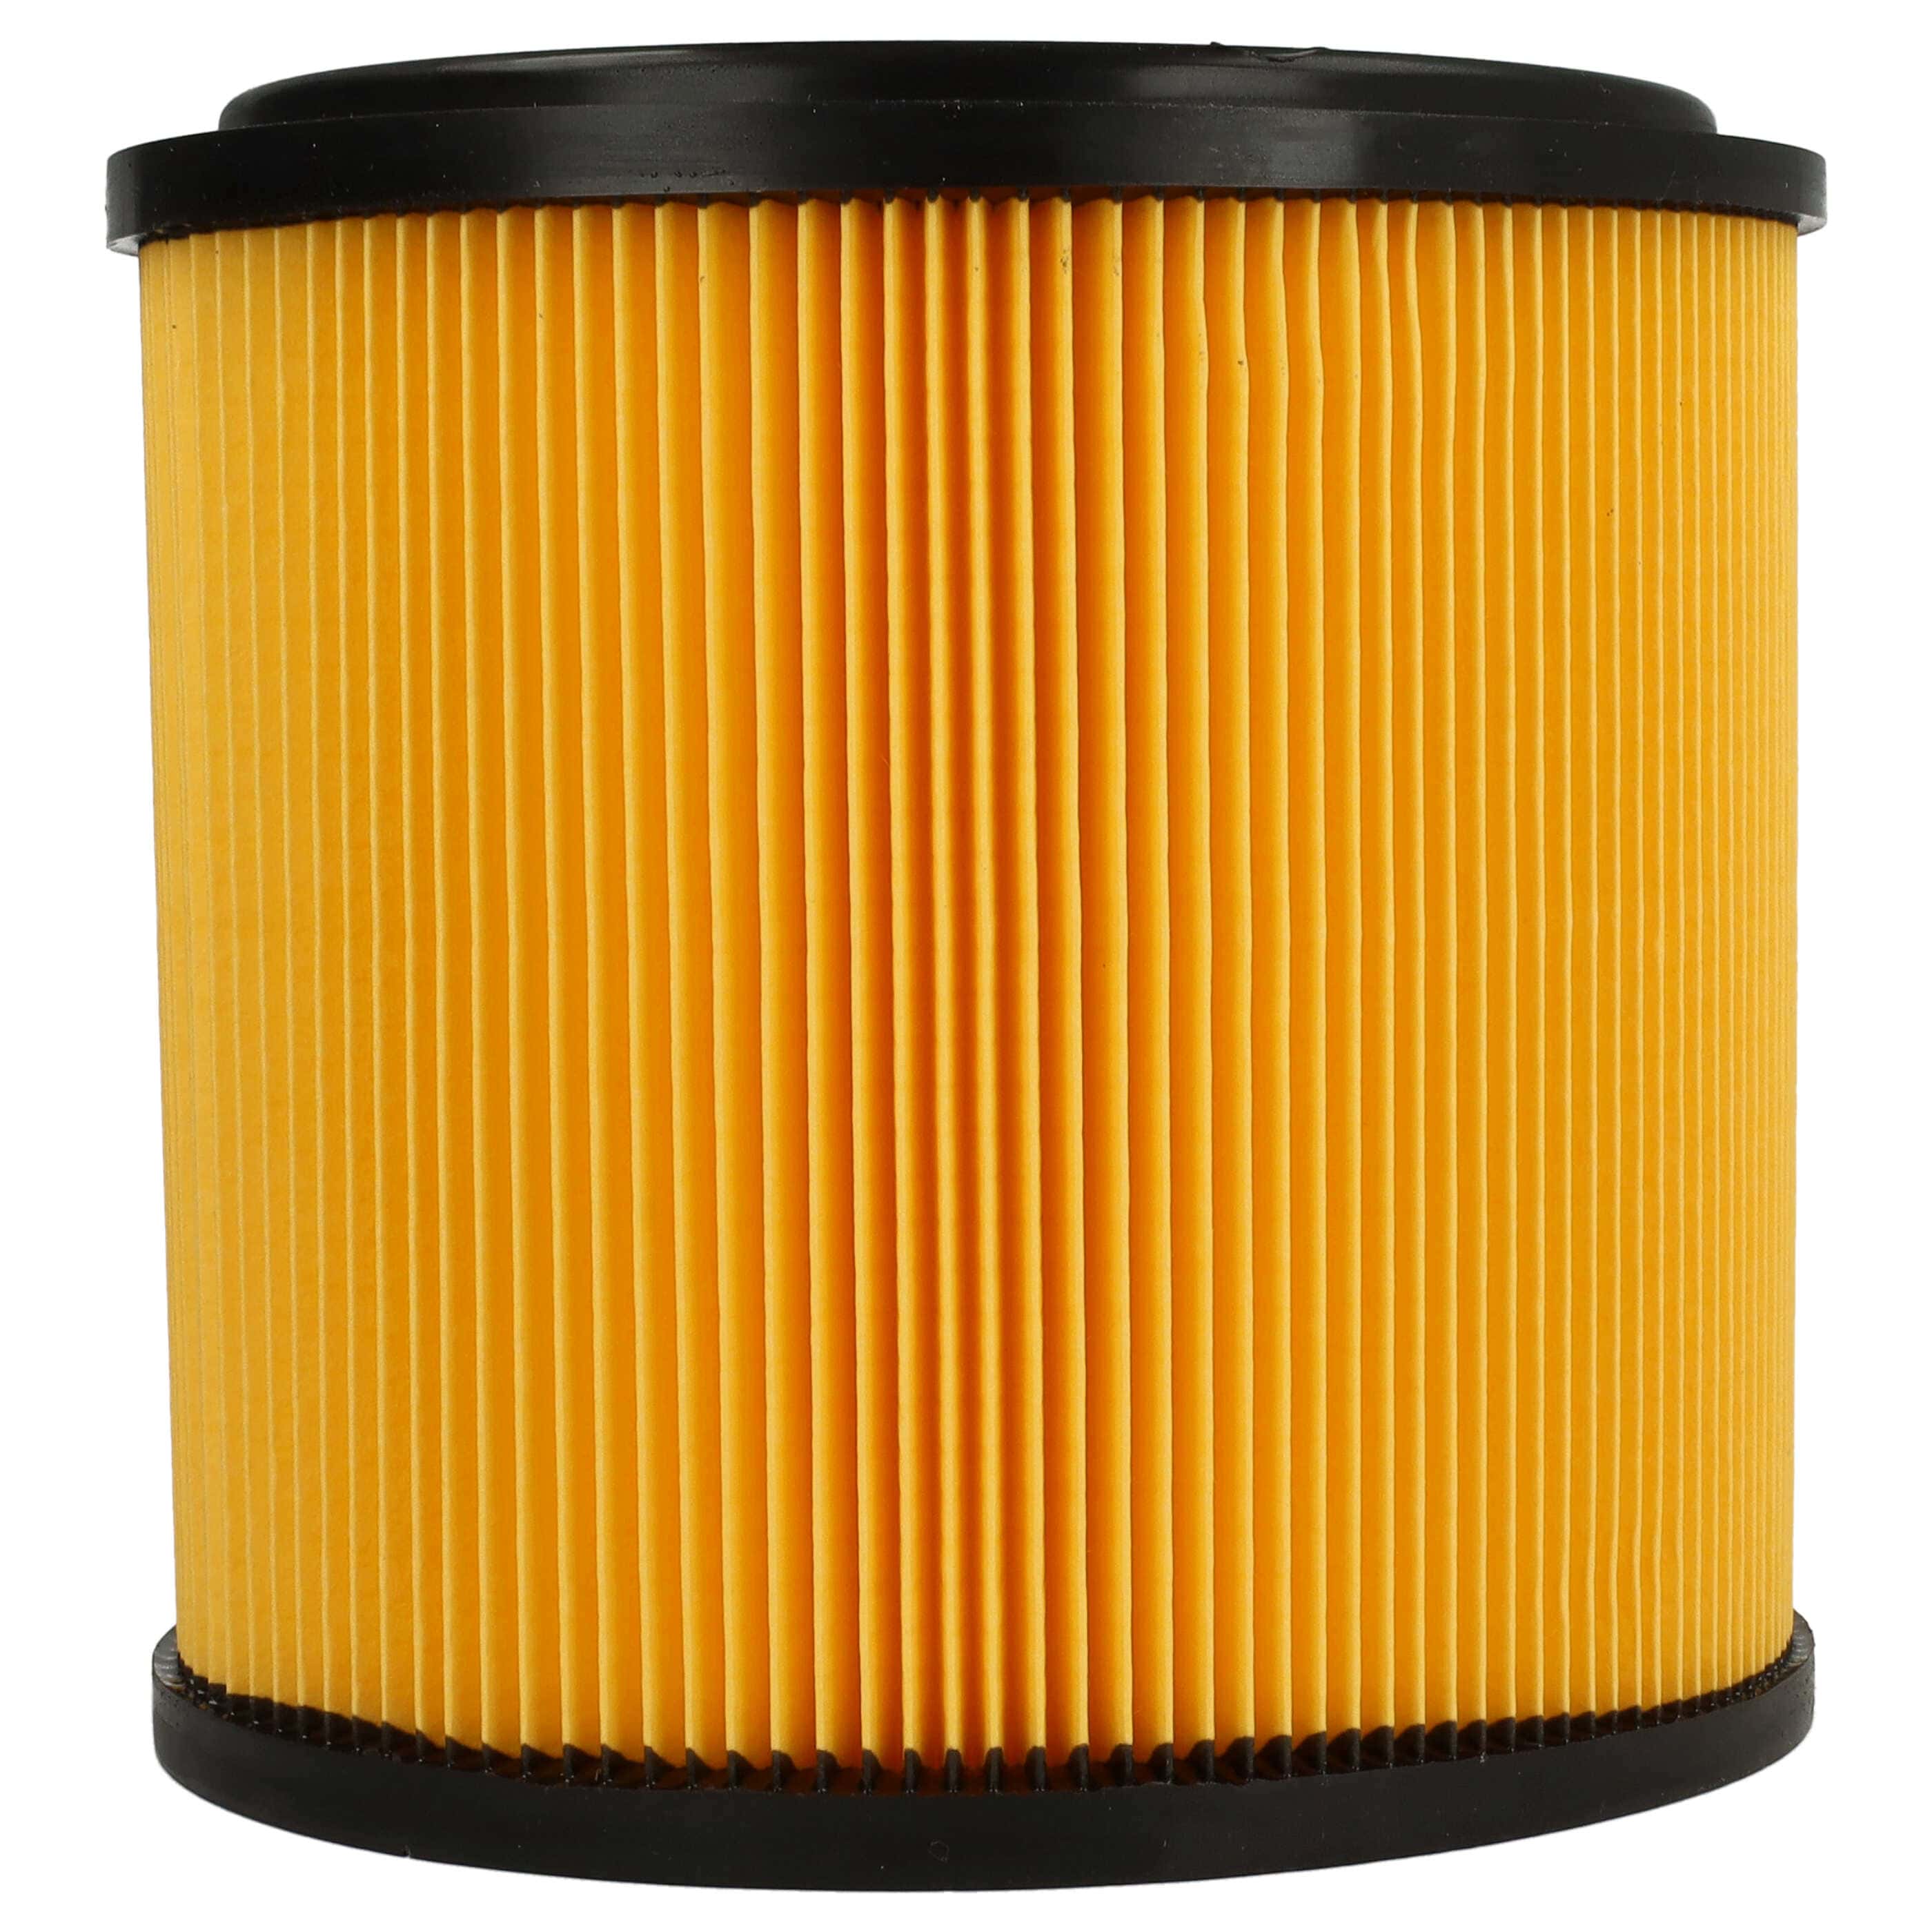 Filtro sostituisce Grizzly 91092030 per aspirapolvere - filtro a pieghe, nero / giallo